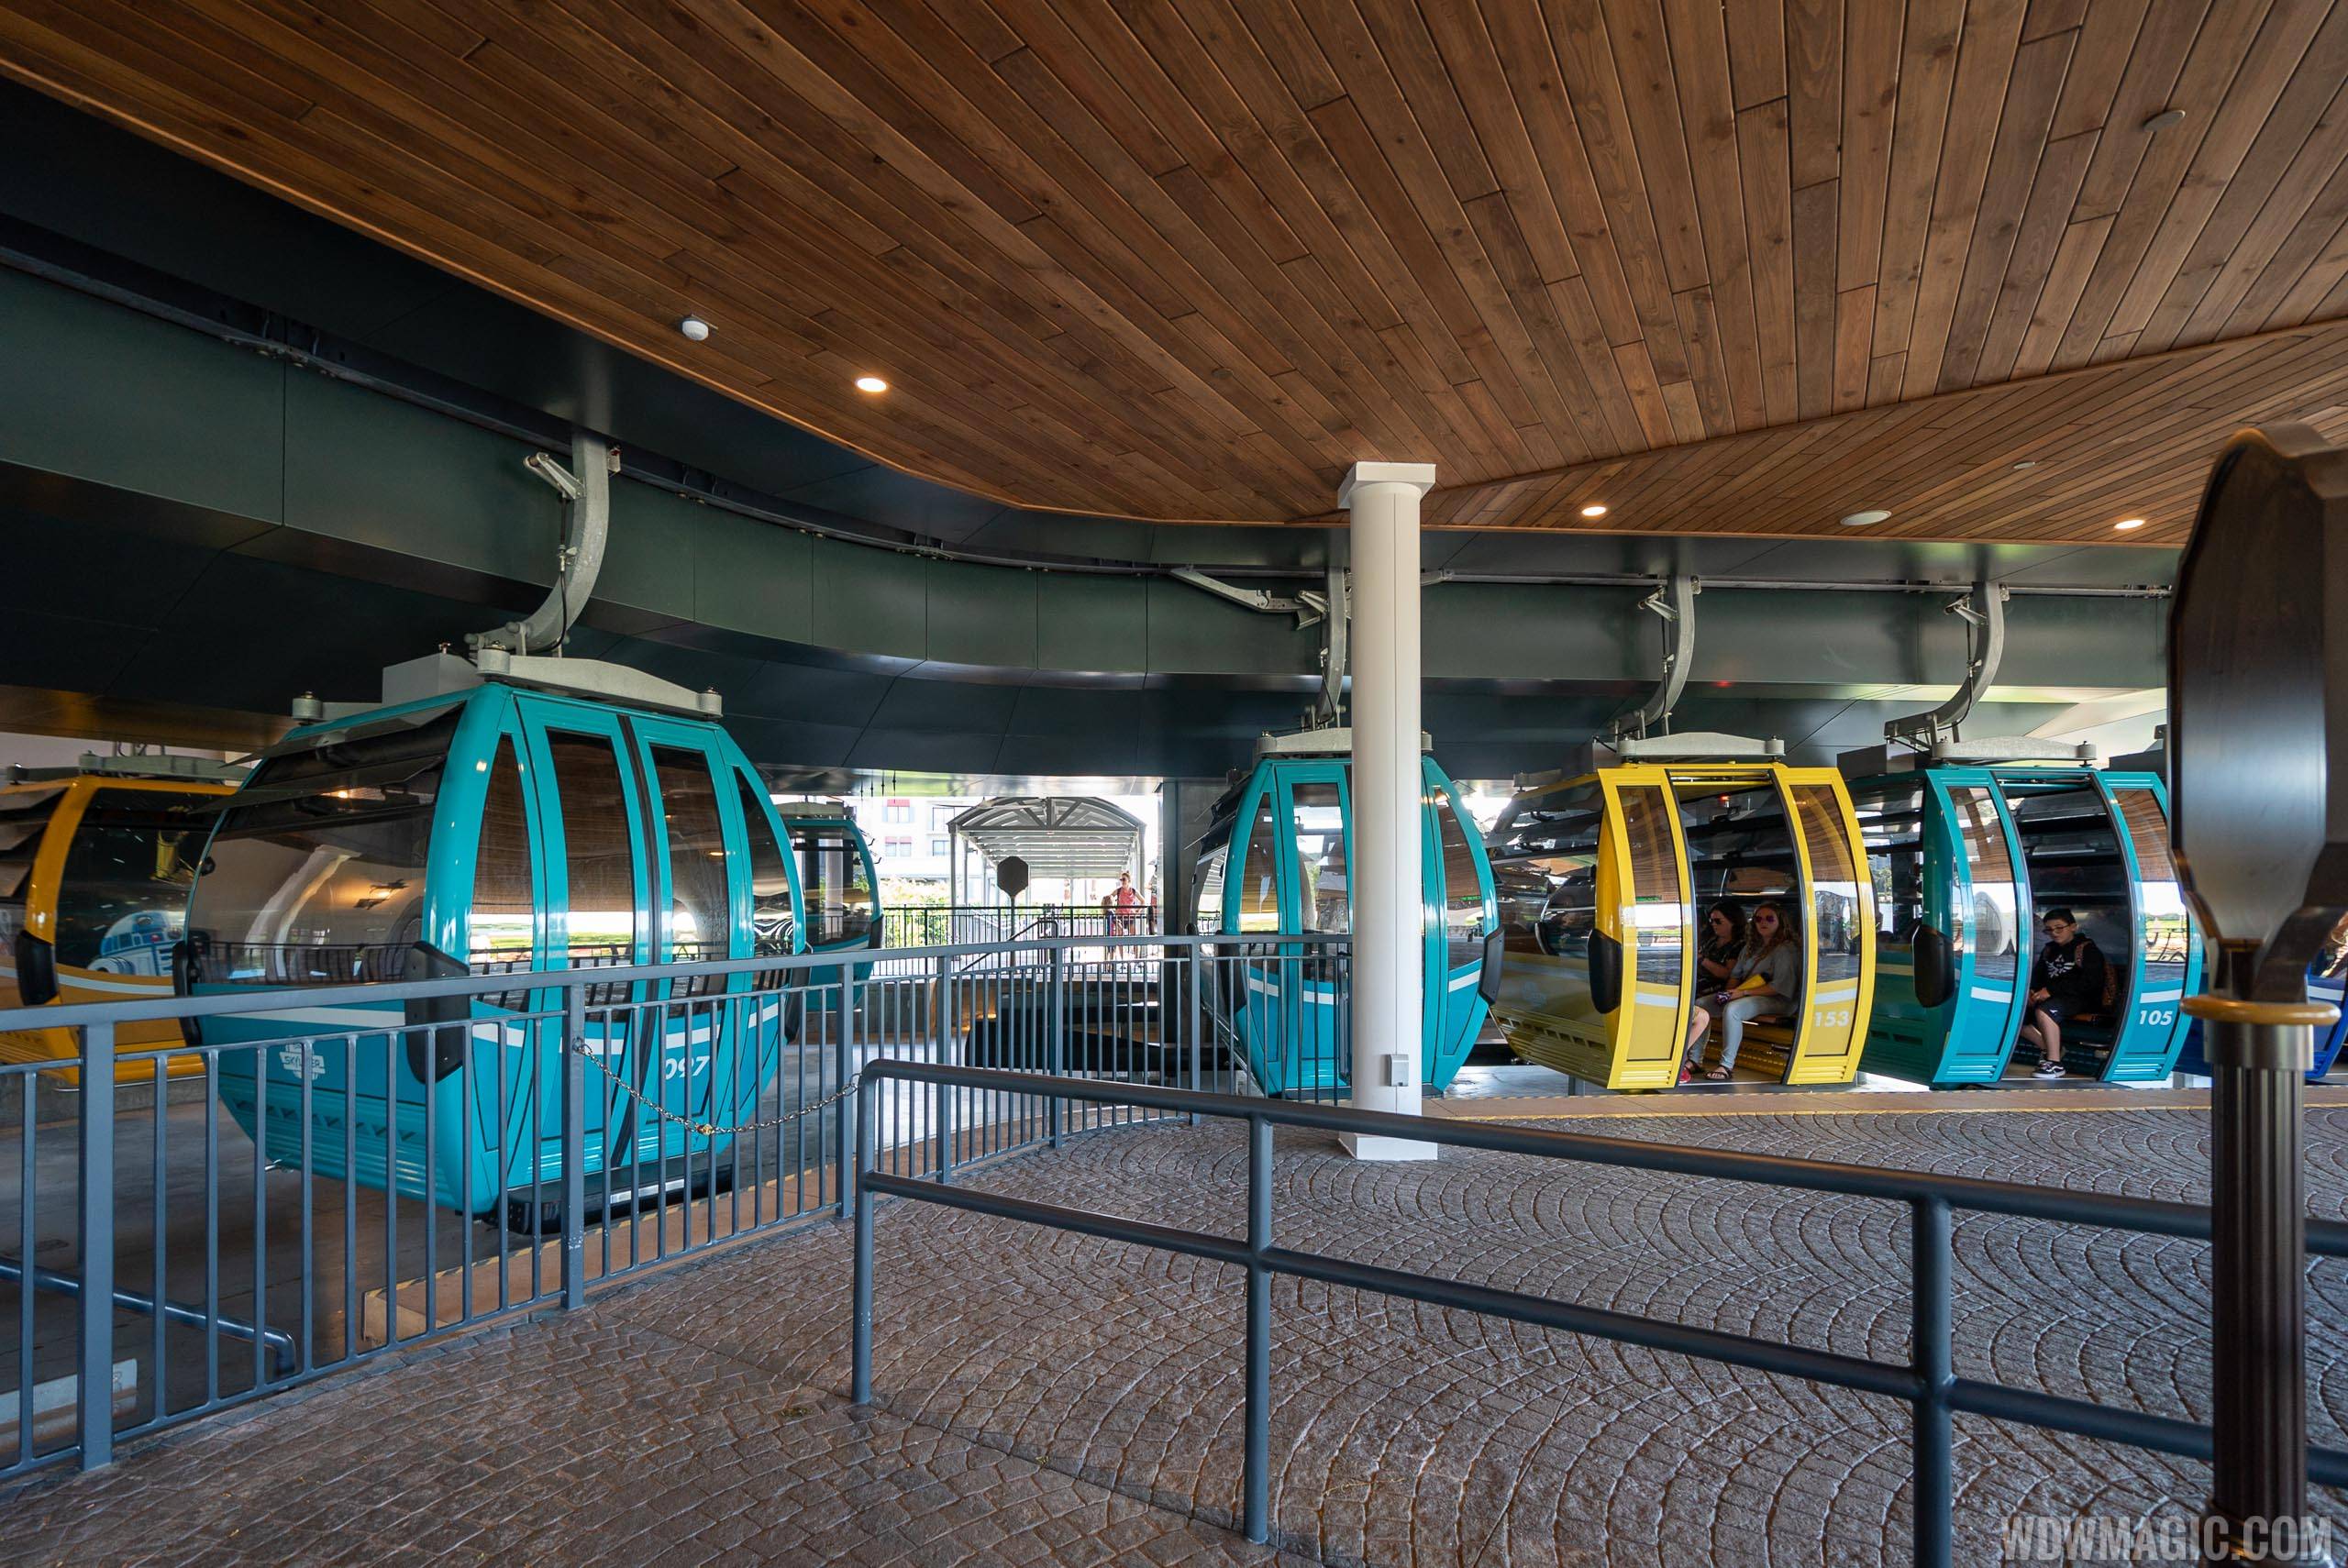 Disney Skyliner - Riviera Resort station